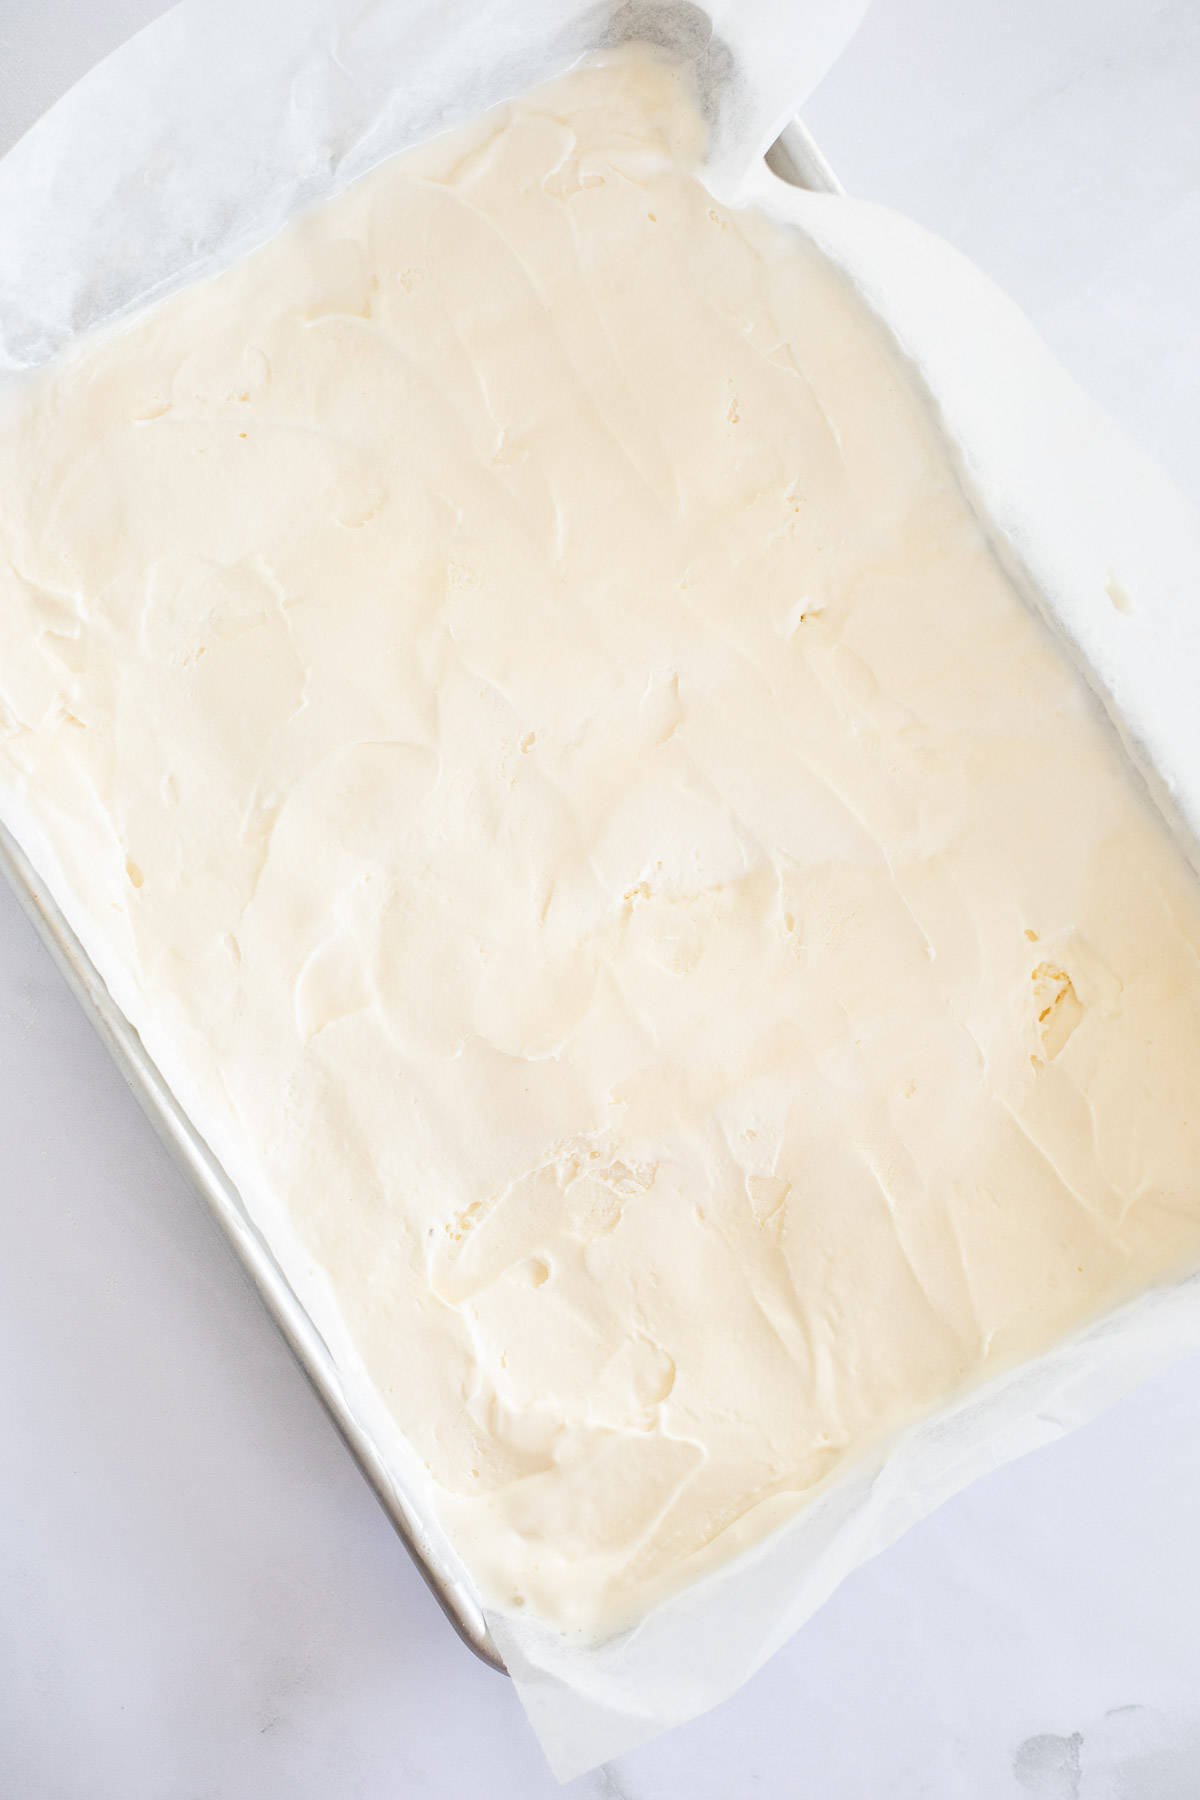 vanilla ice cream spread into a baking sheet.